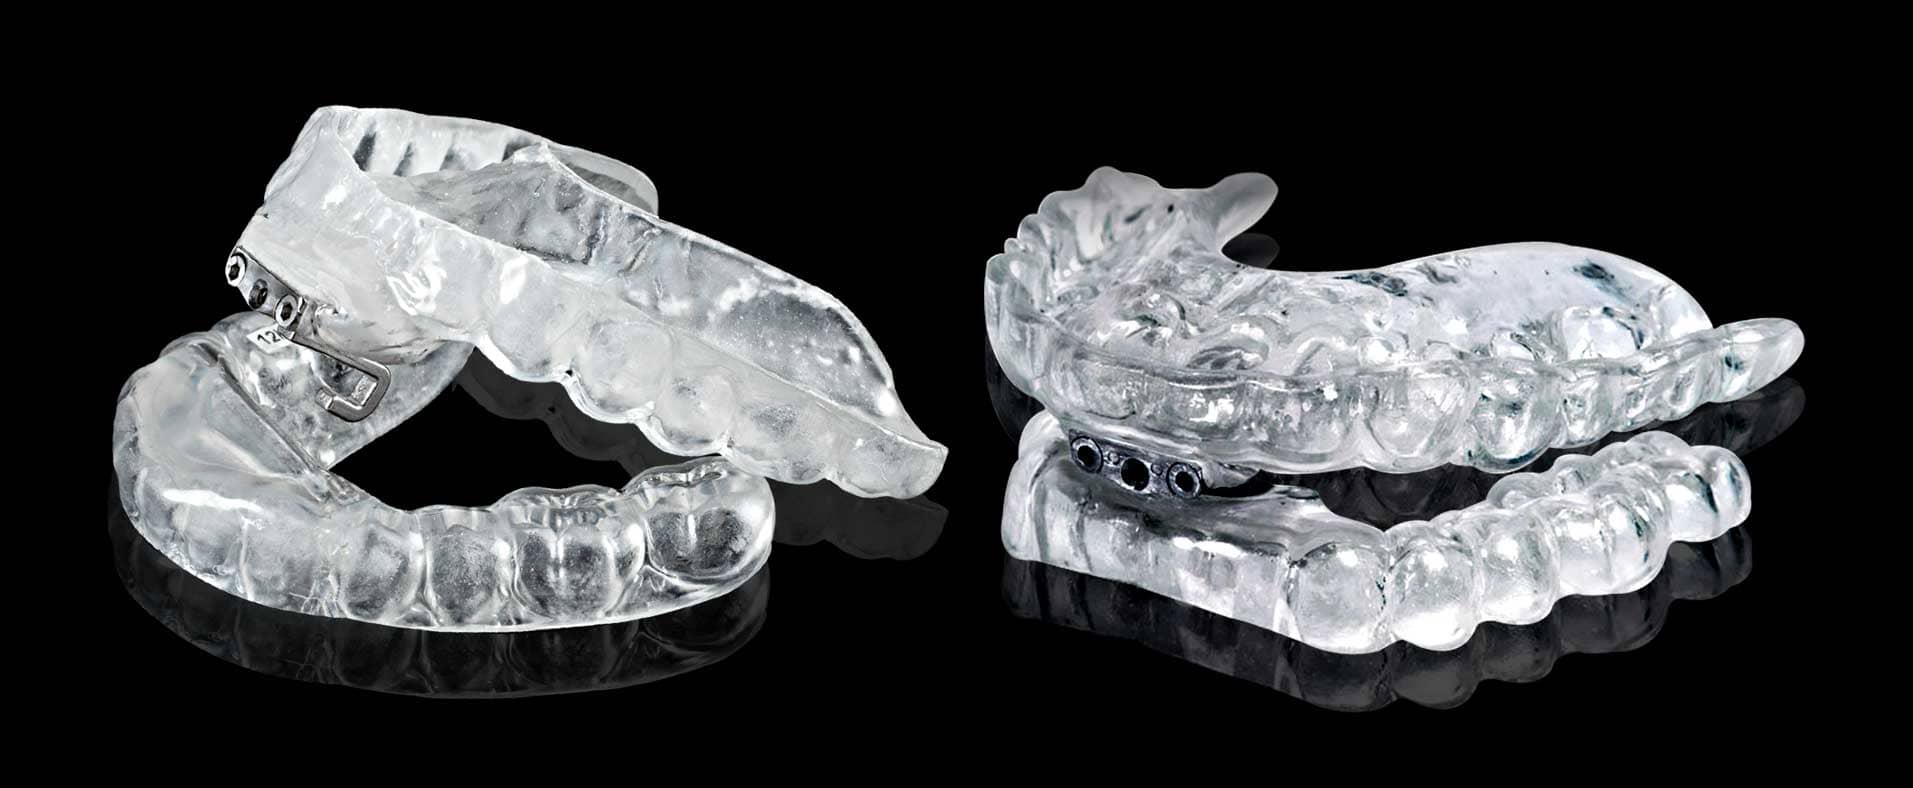 multiple teeth retainers